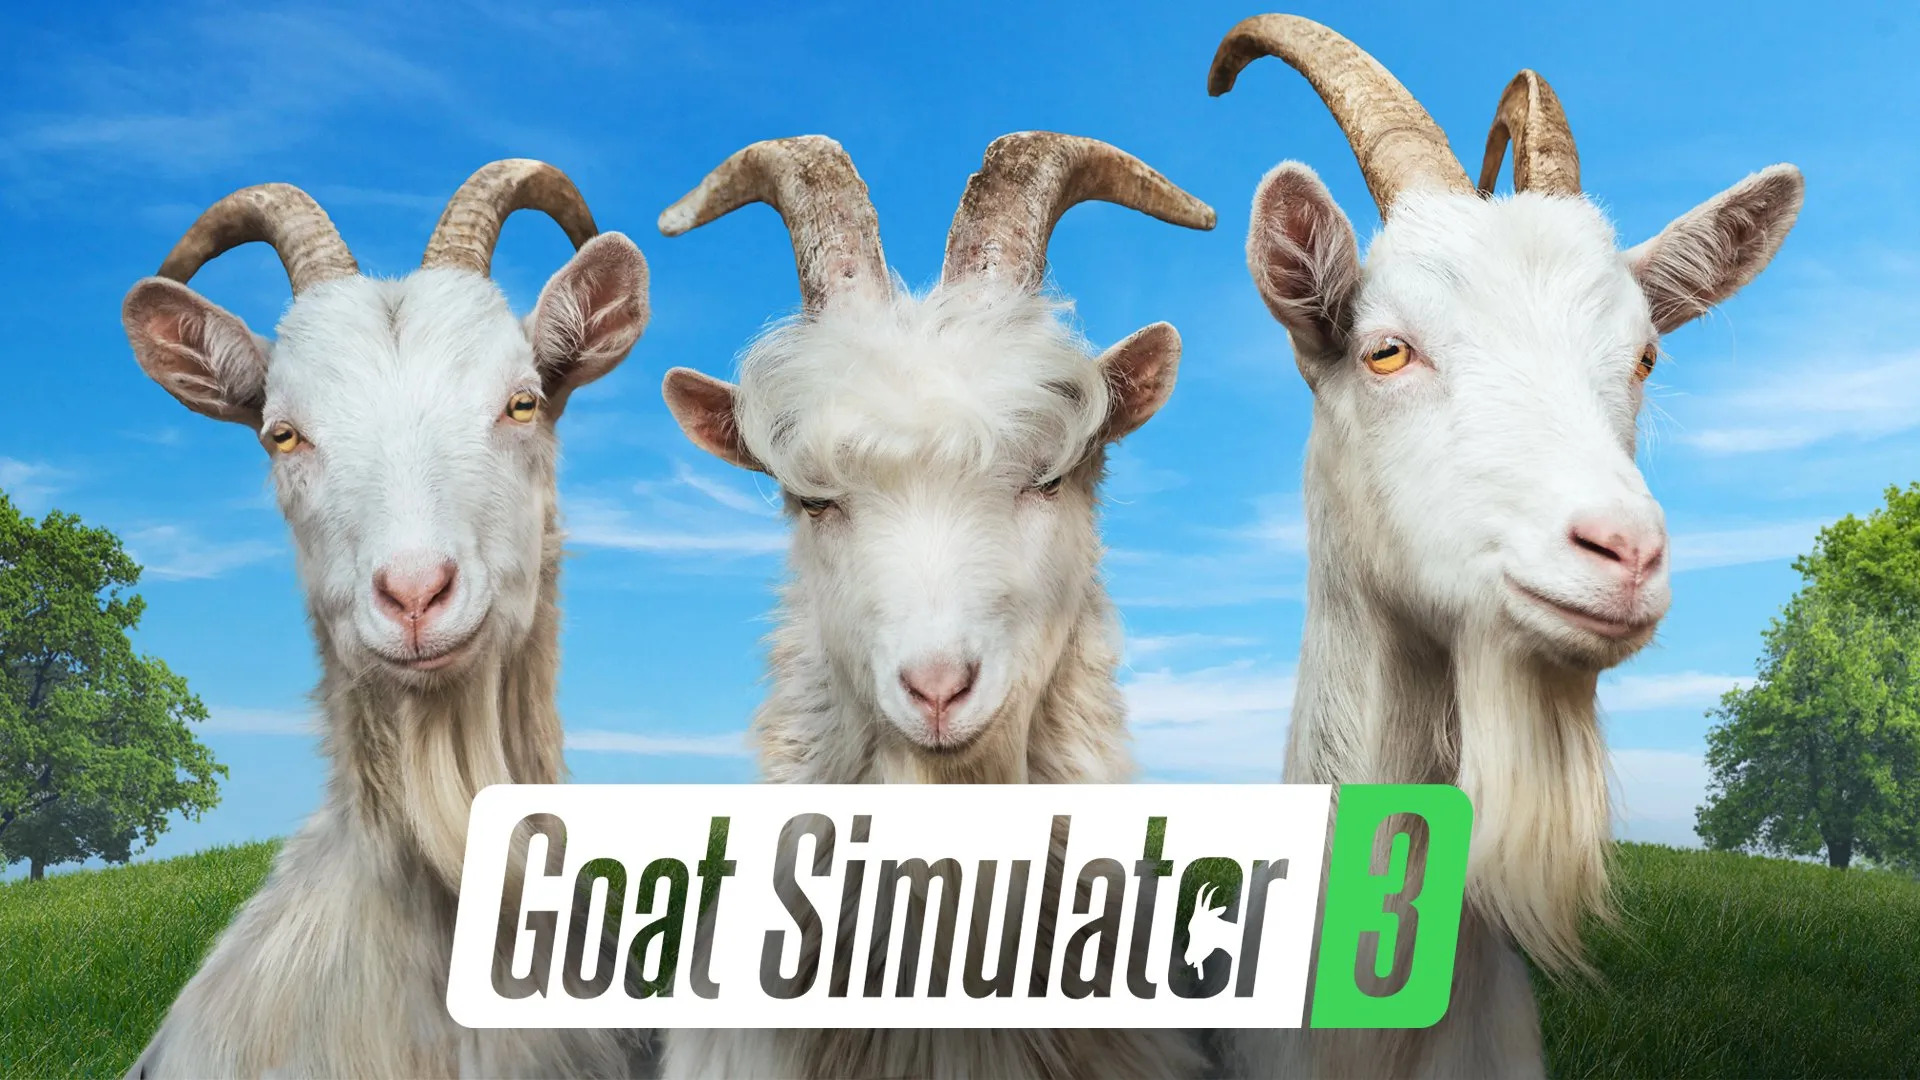 ビデオの対象『Goat Simulator 3』が 11 月 17 日に発売決定